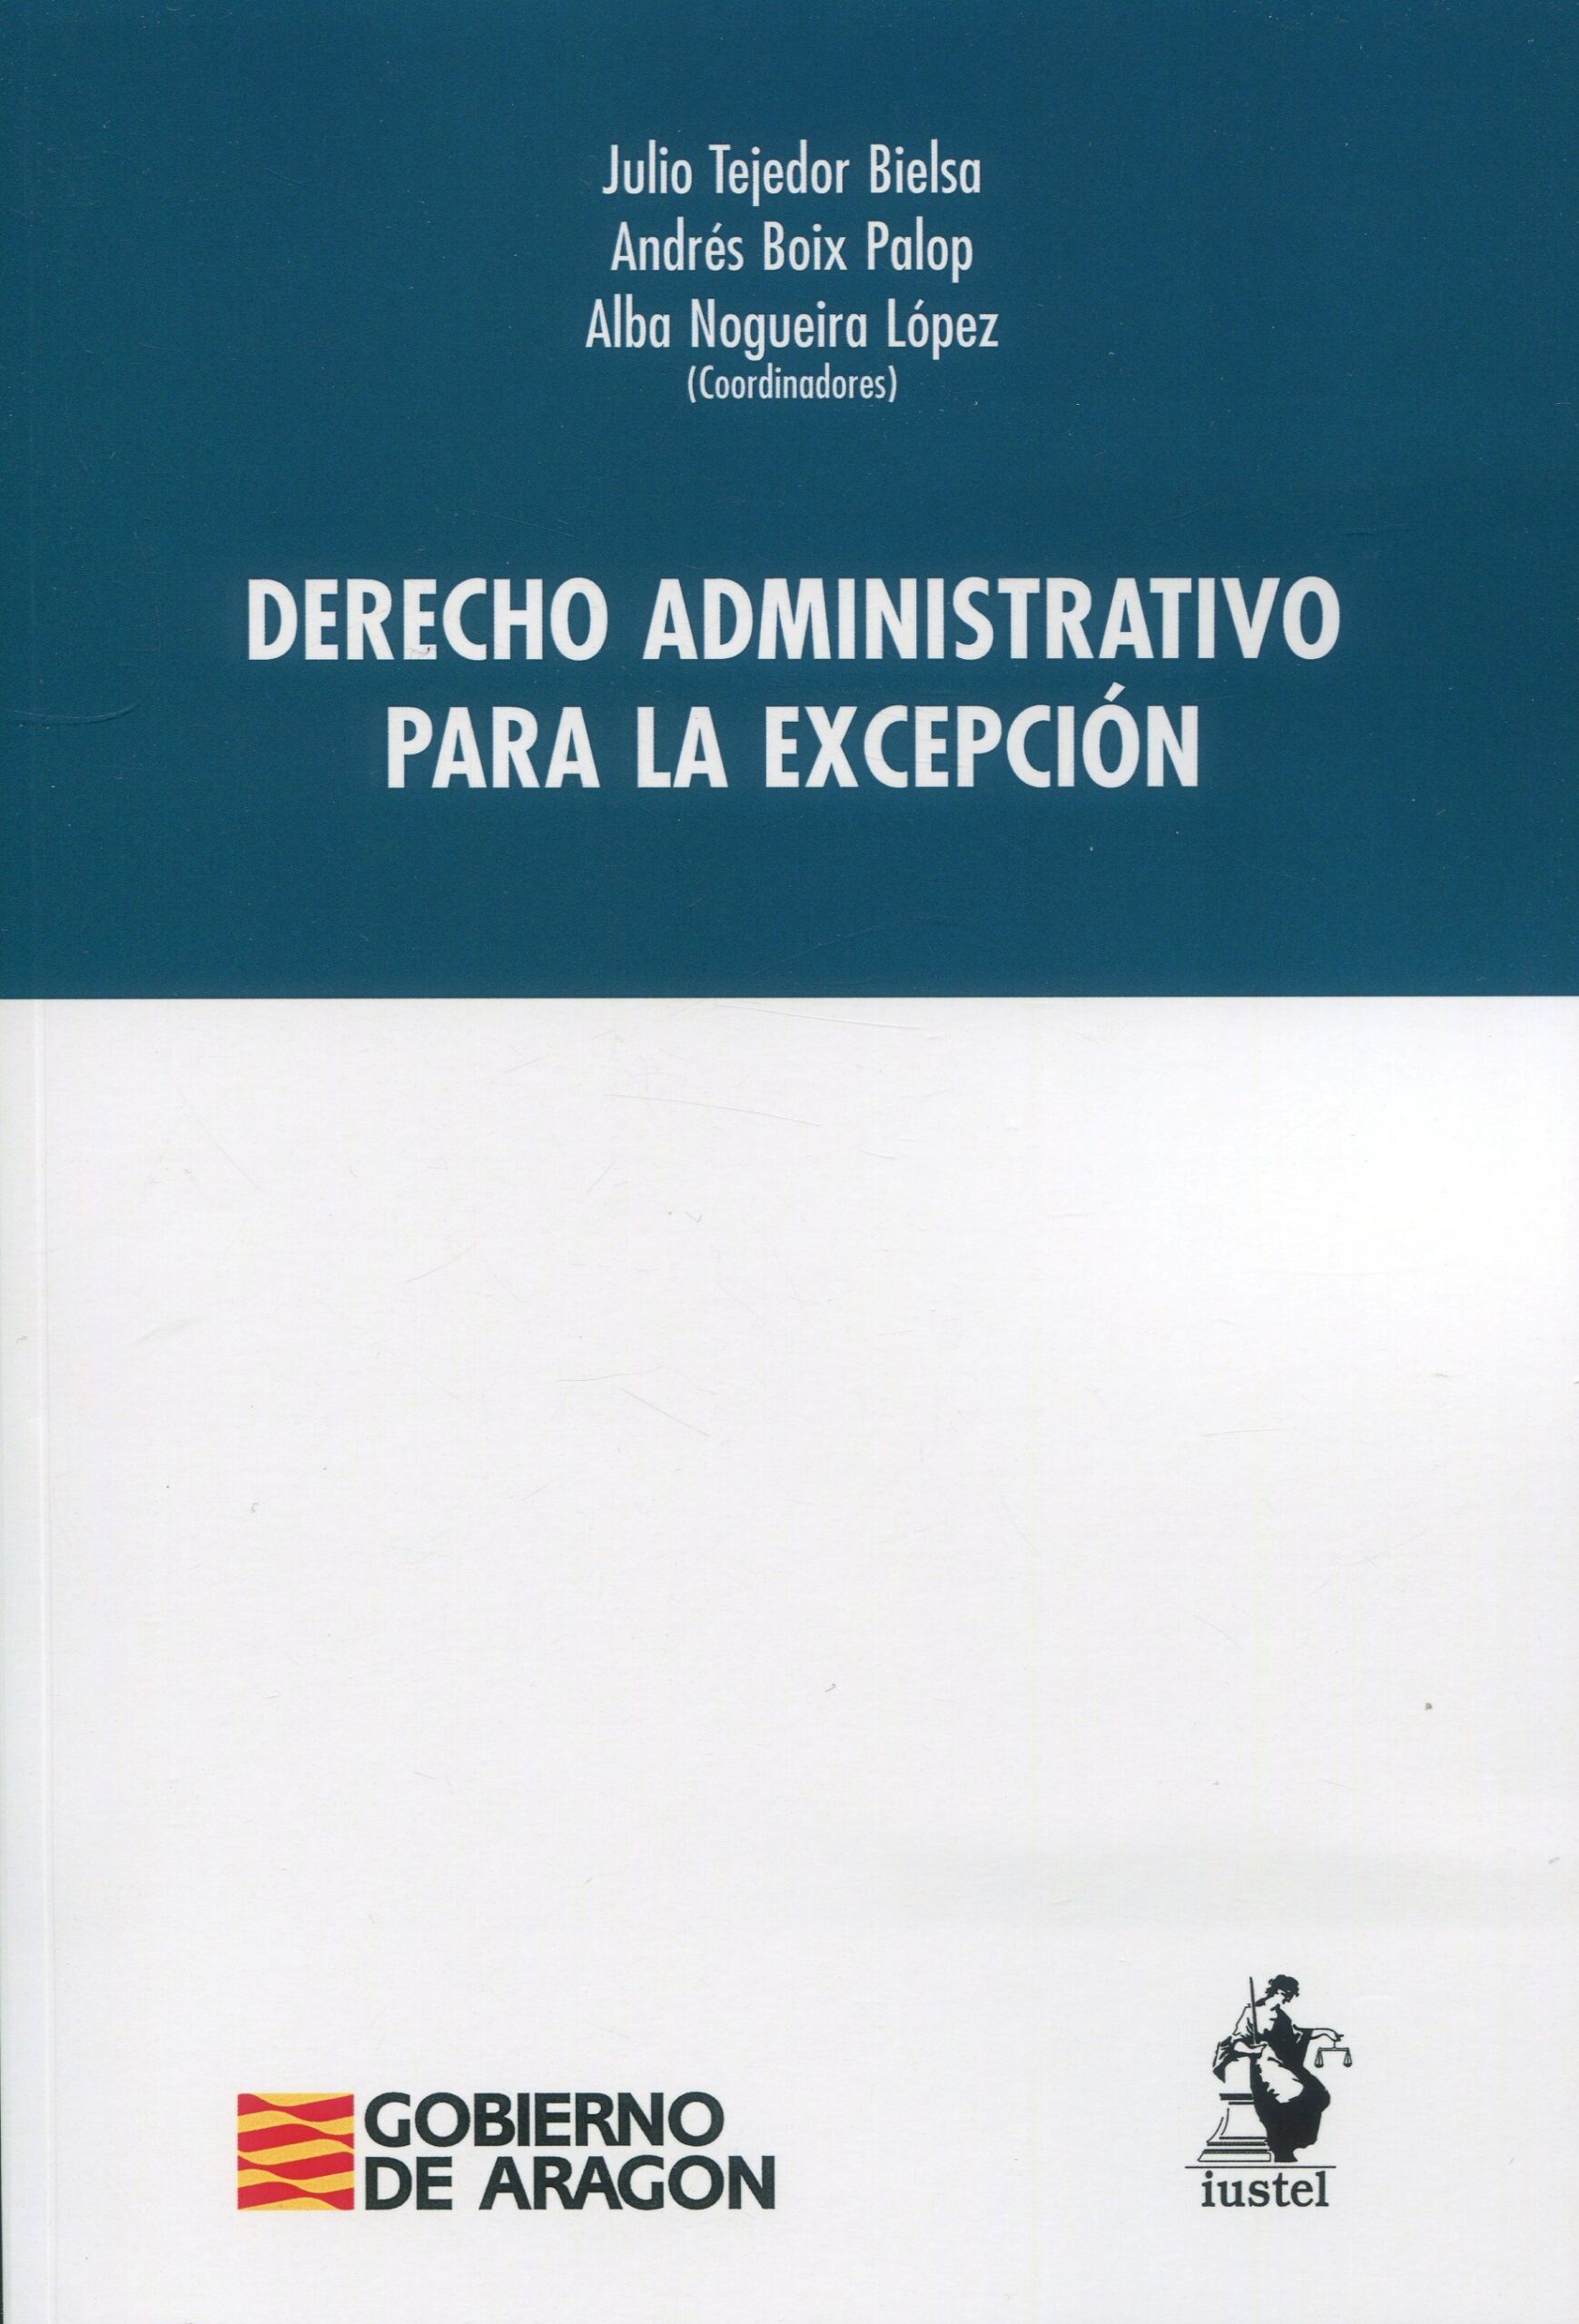 Imagen de portada del libro Derecho administrativo para la excepción